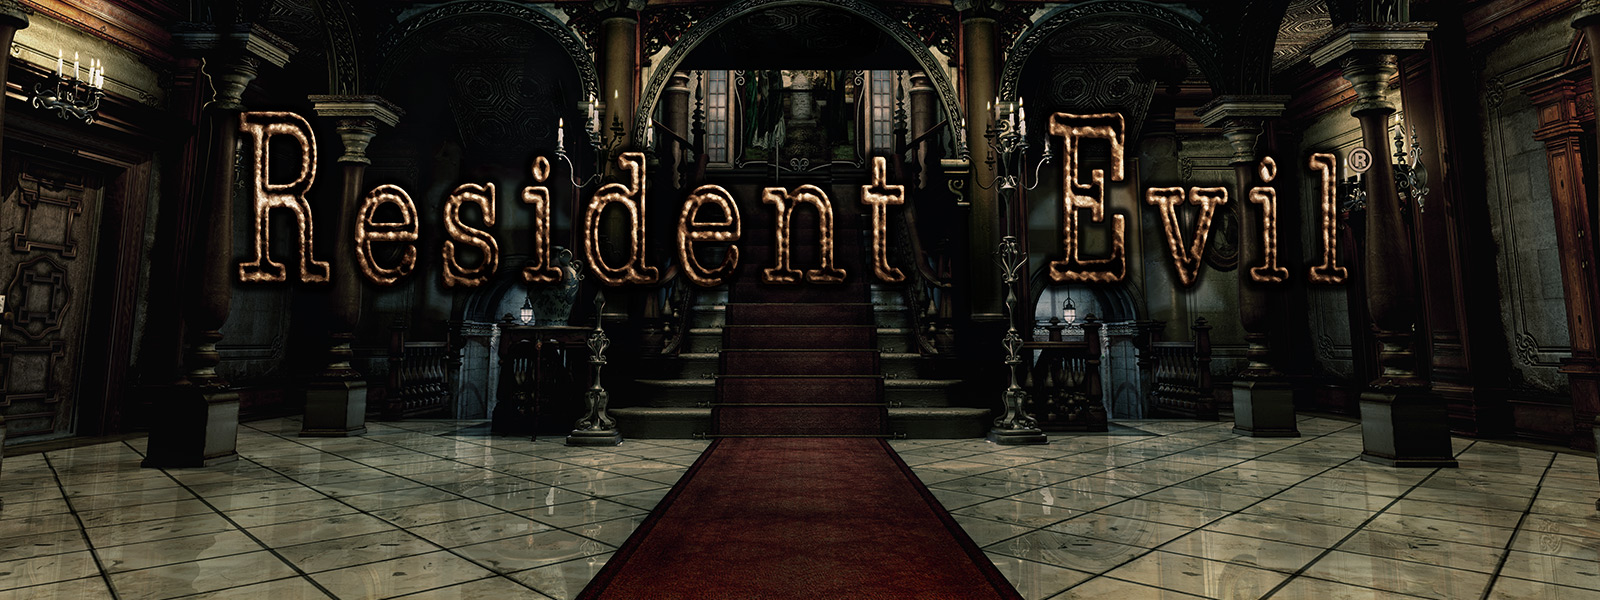 Resident Evil, beeld van een grote ingang met bogen en met rood tapijt beklede trappen